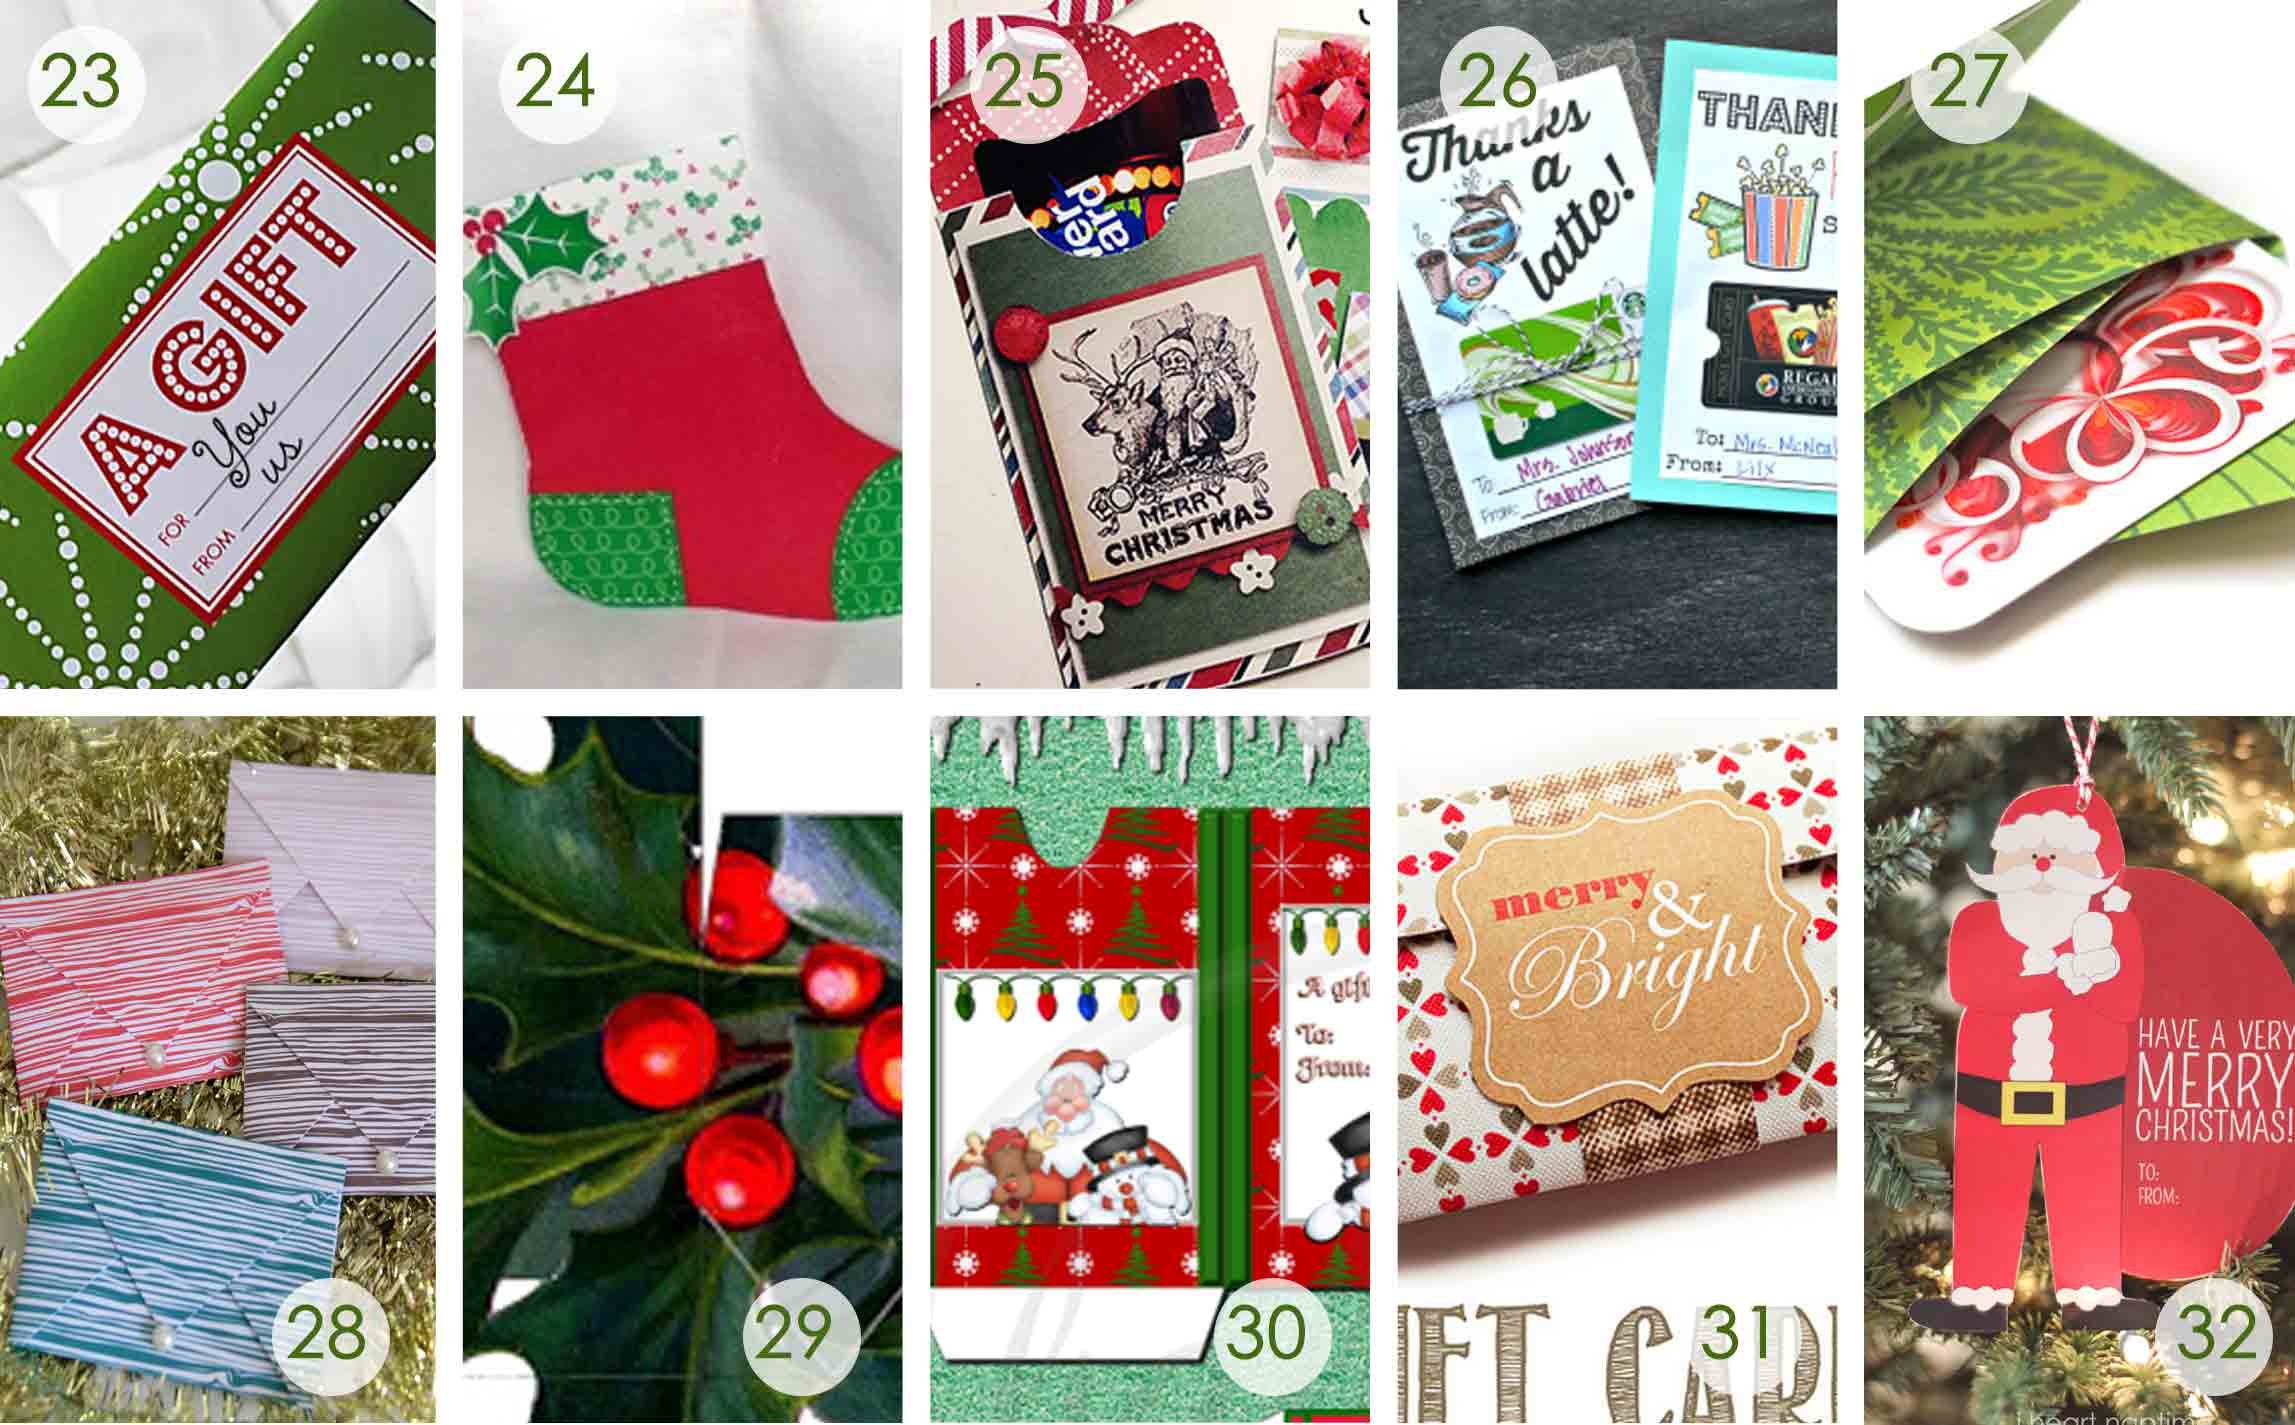 Over 50 Printable Gift Card Holders For The Holidays | Gcg - Free Printable Christmas Money Holders